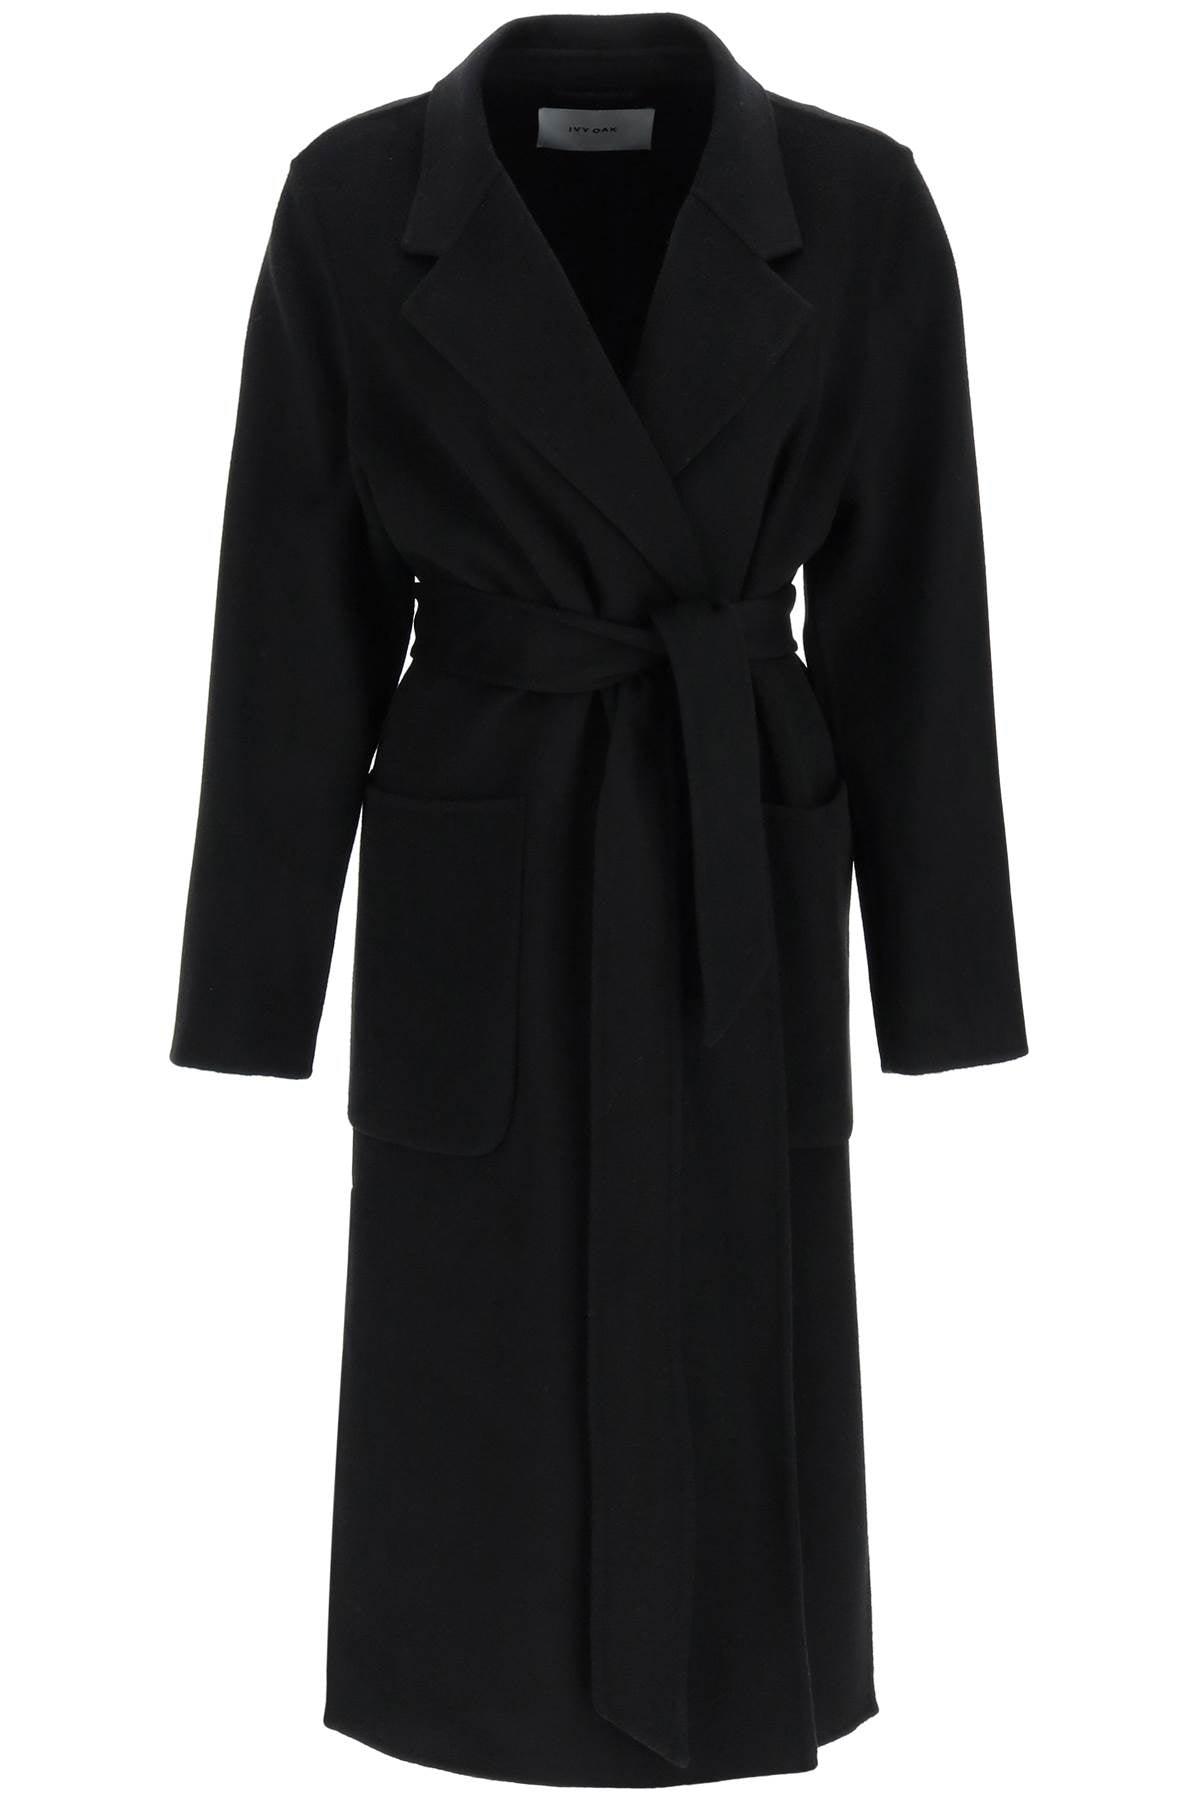 IVY & OAK Ivy Oak 'celia' Wool Coat in Black | Lyst